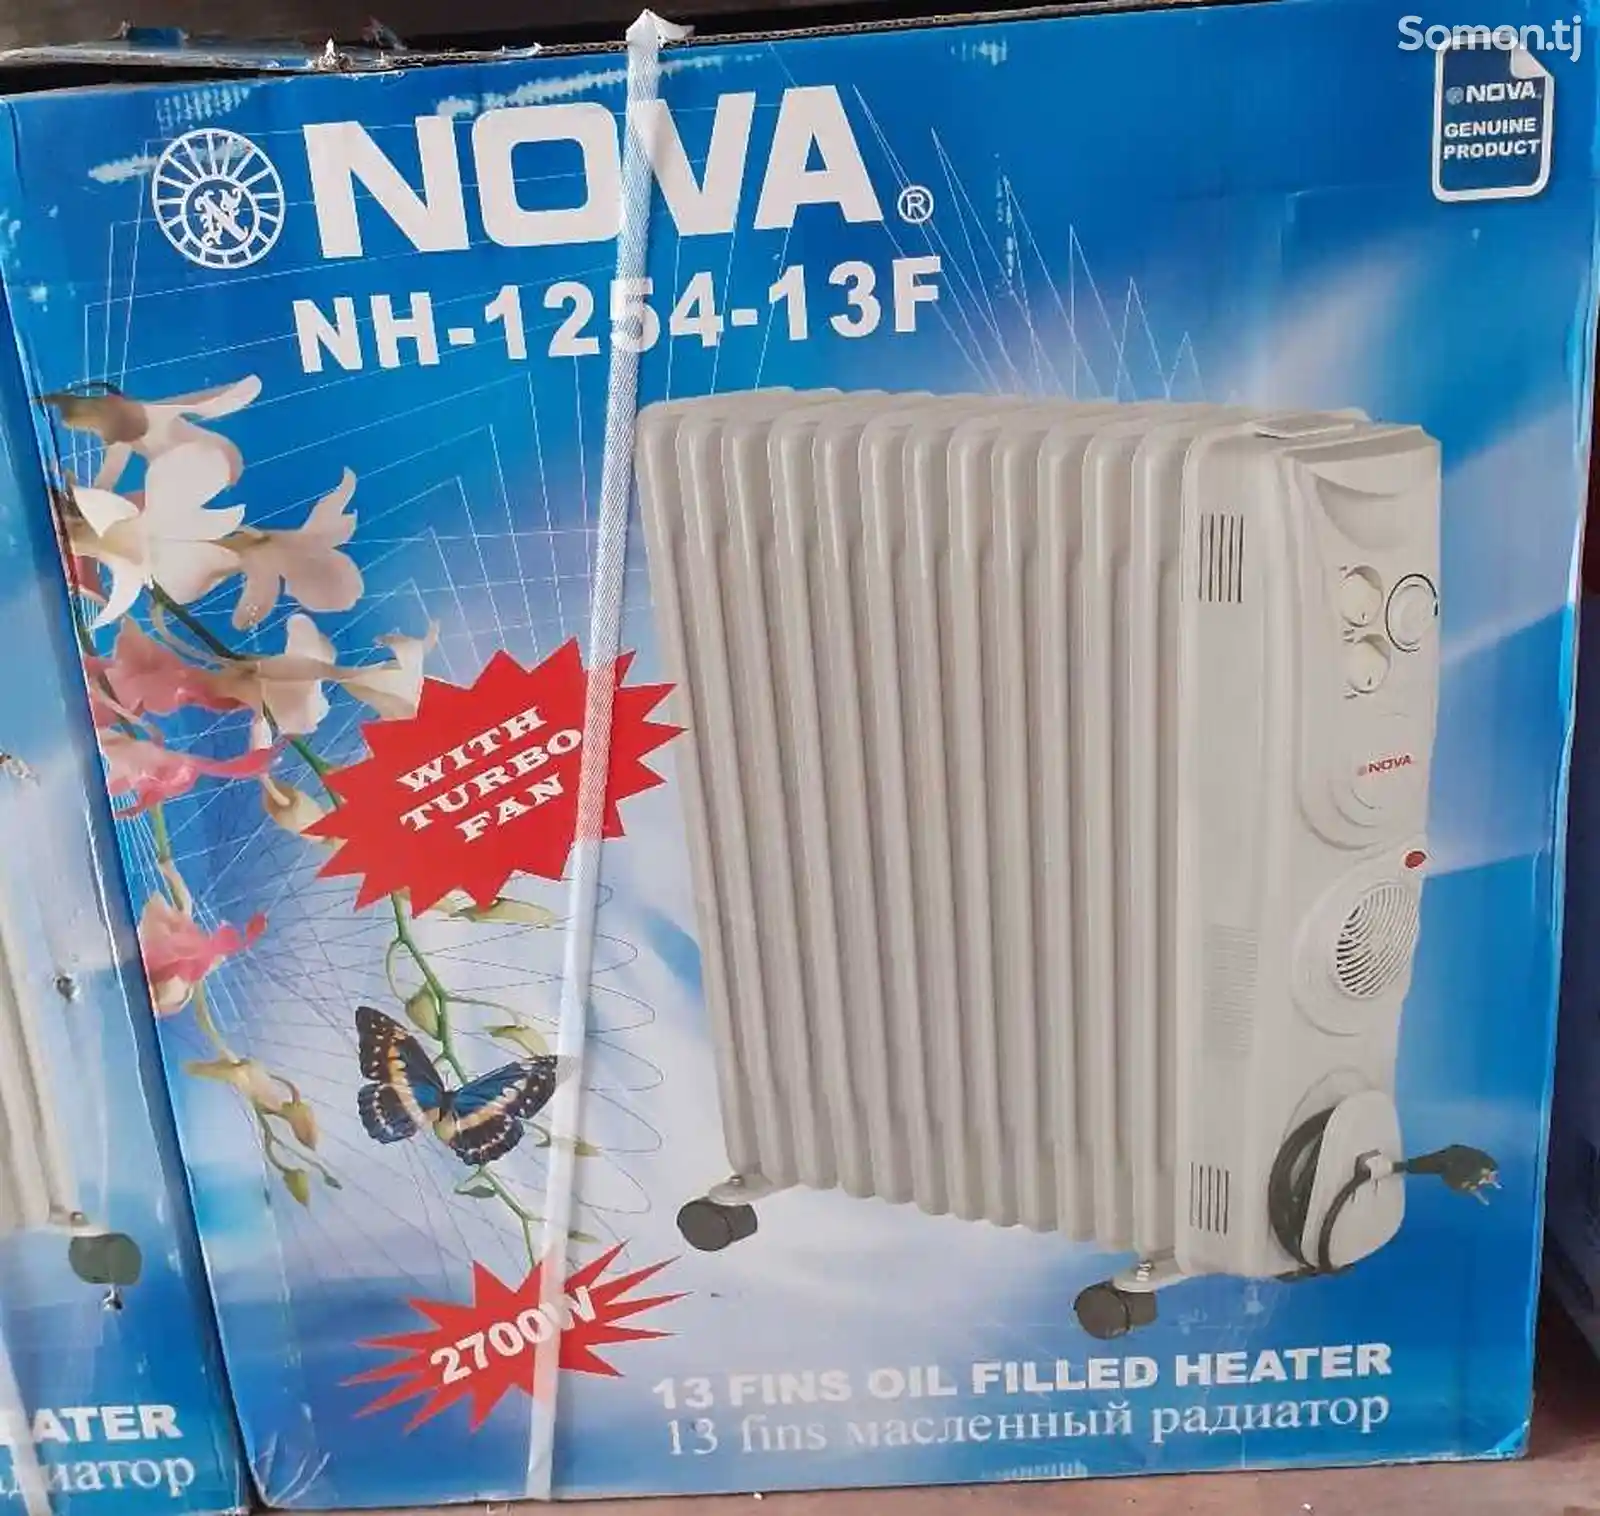 Радиатор Hova 1254 13